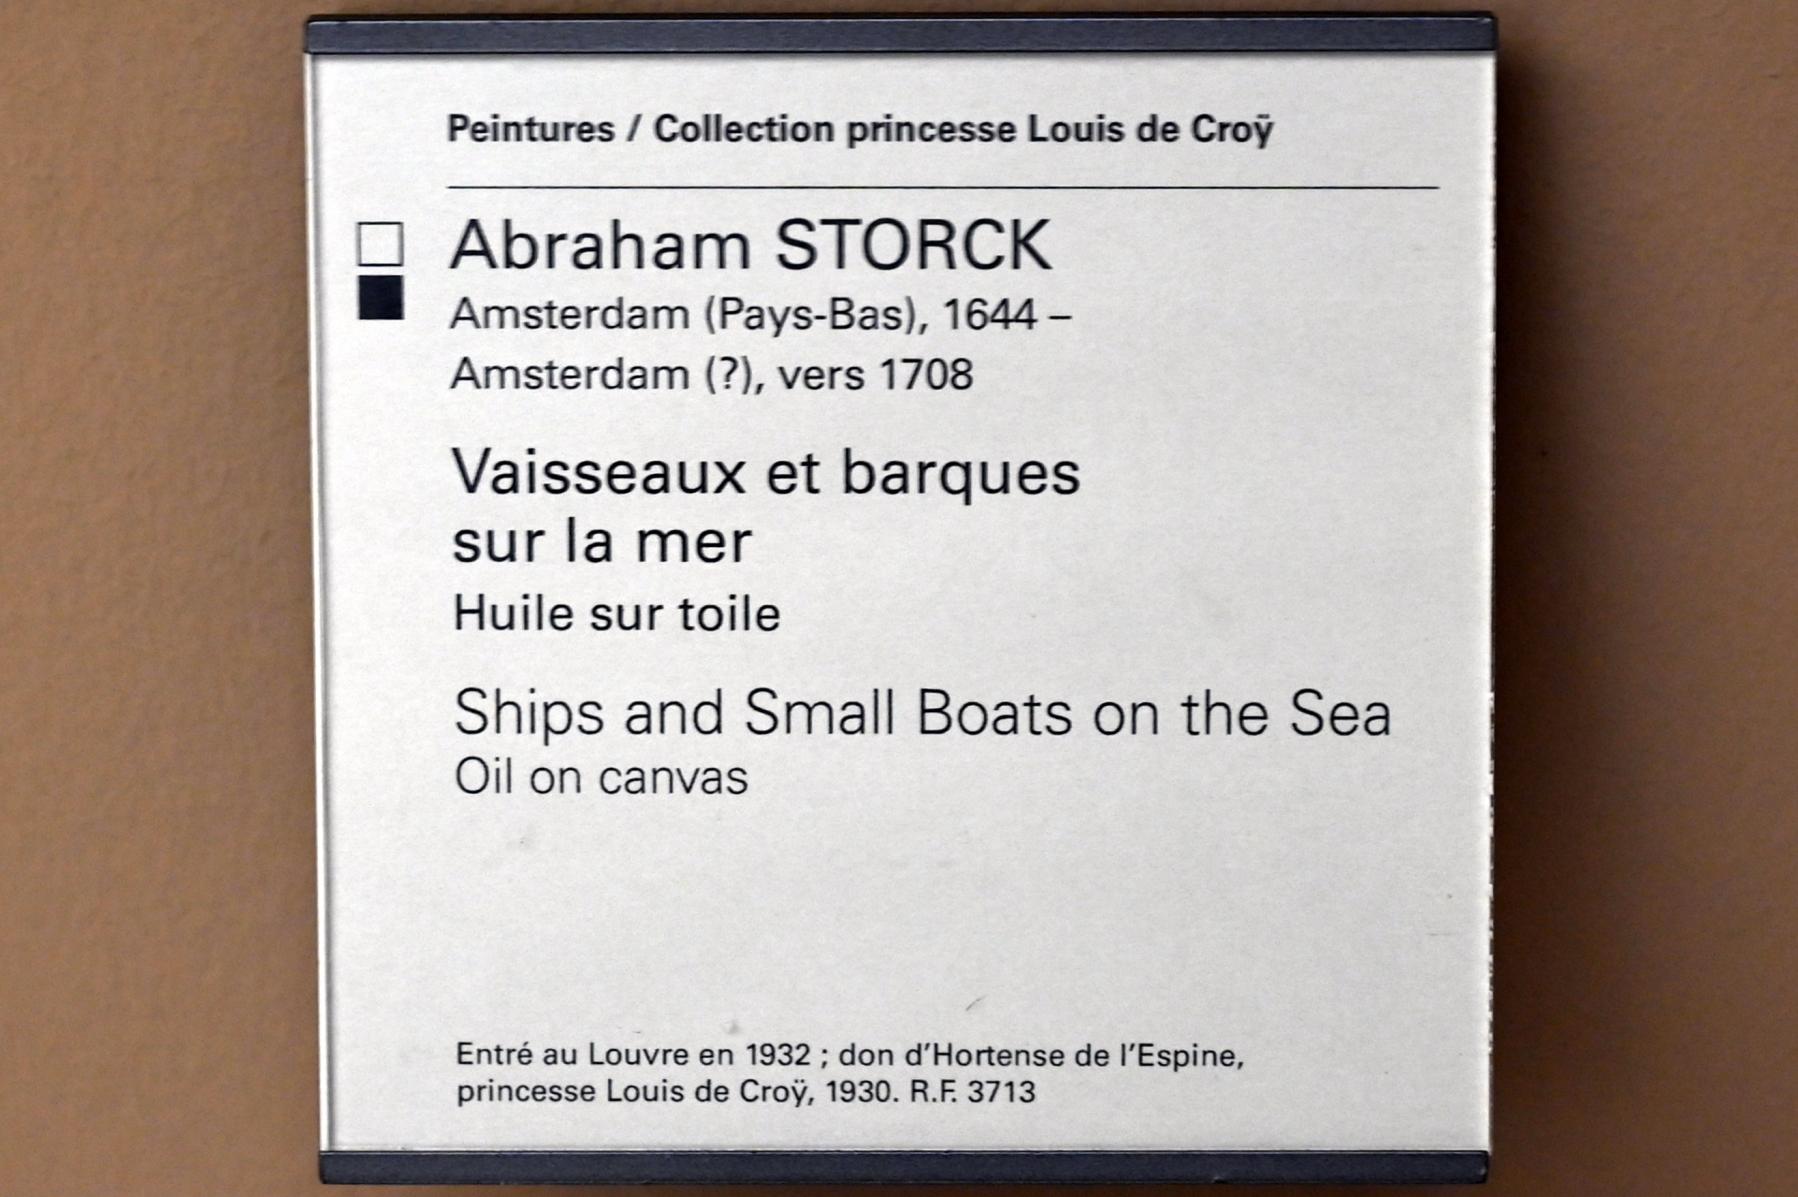 Abraham Storck (Undatiert), Seestück mit Schiffen und kleinen Booten, Paris, Musée du Louvre, Saal 902, Undatiert, Bild 2/2